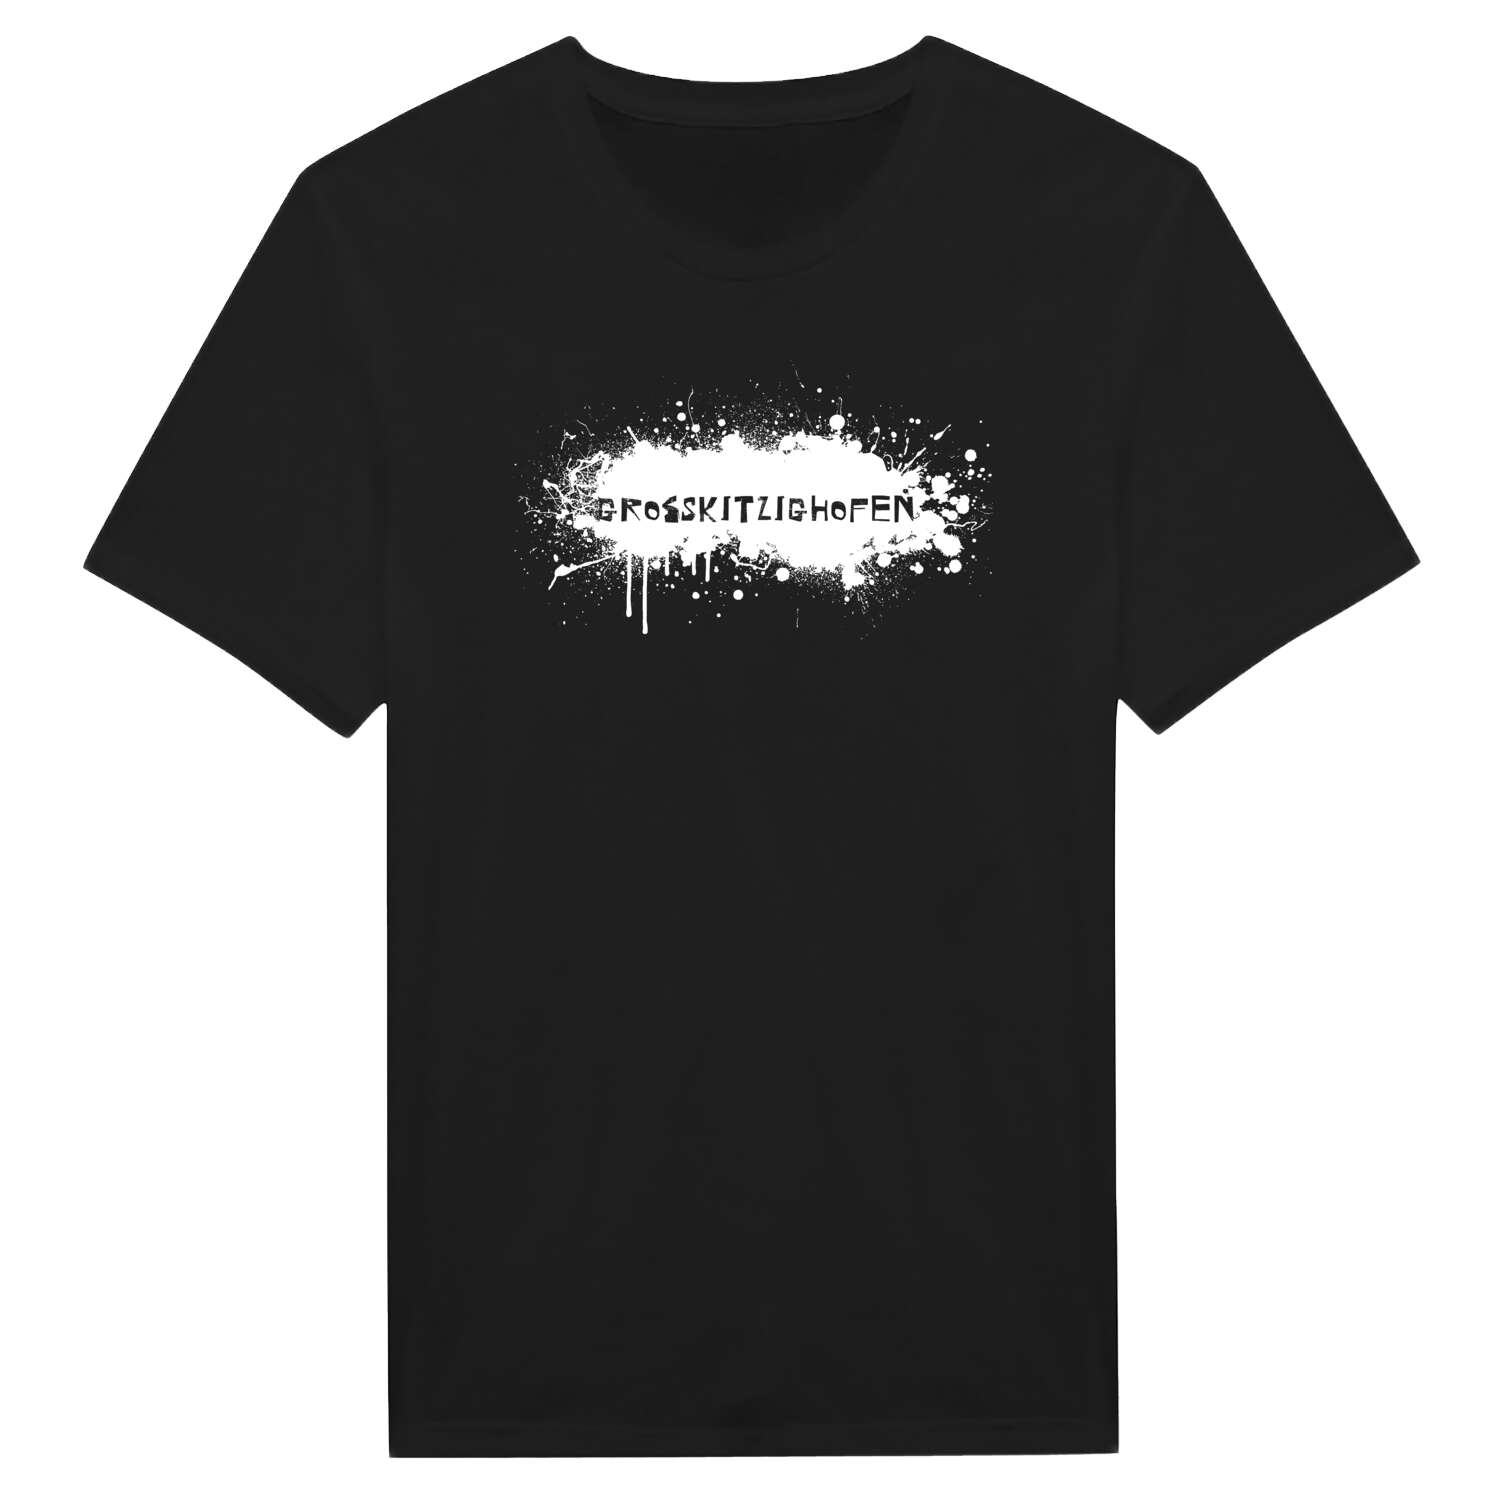 Großkitzighofen T-Shirt »Paint Splash Punk«